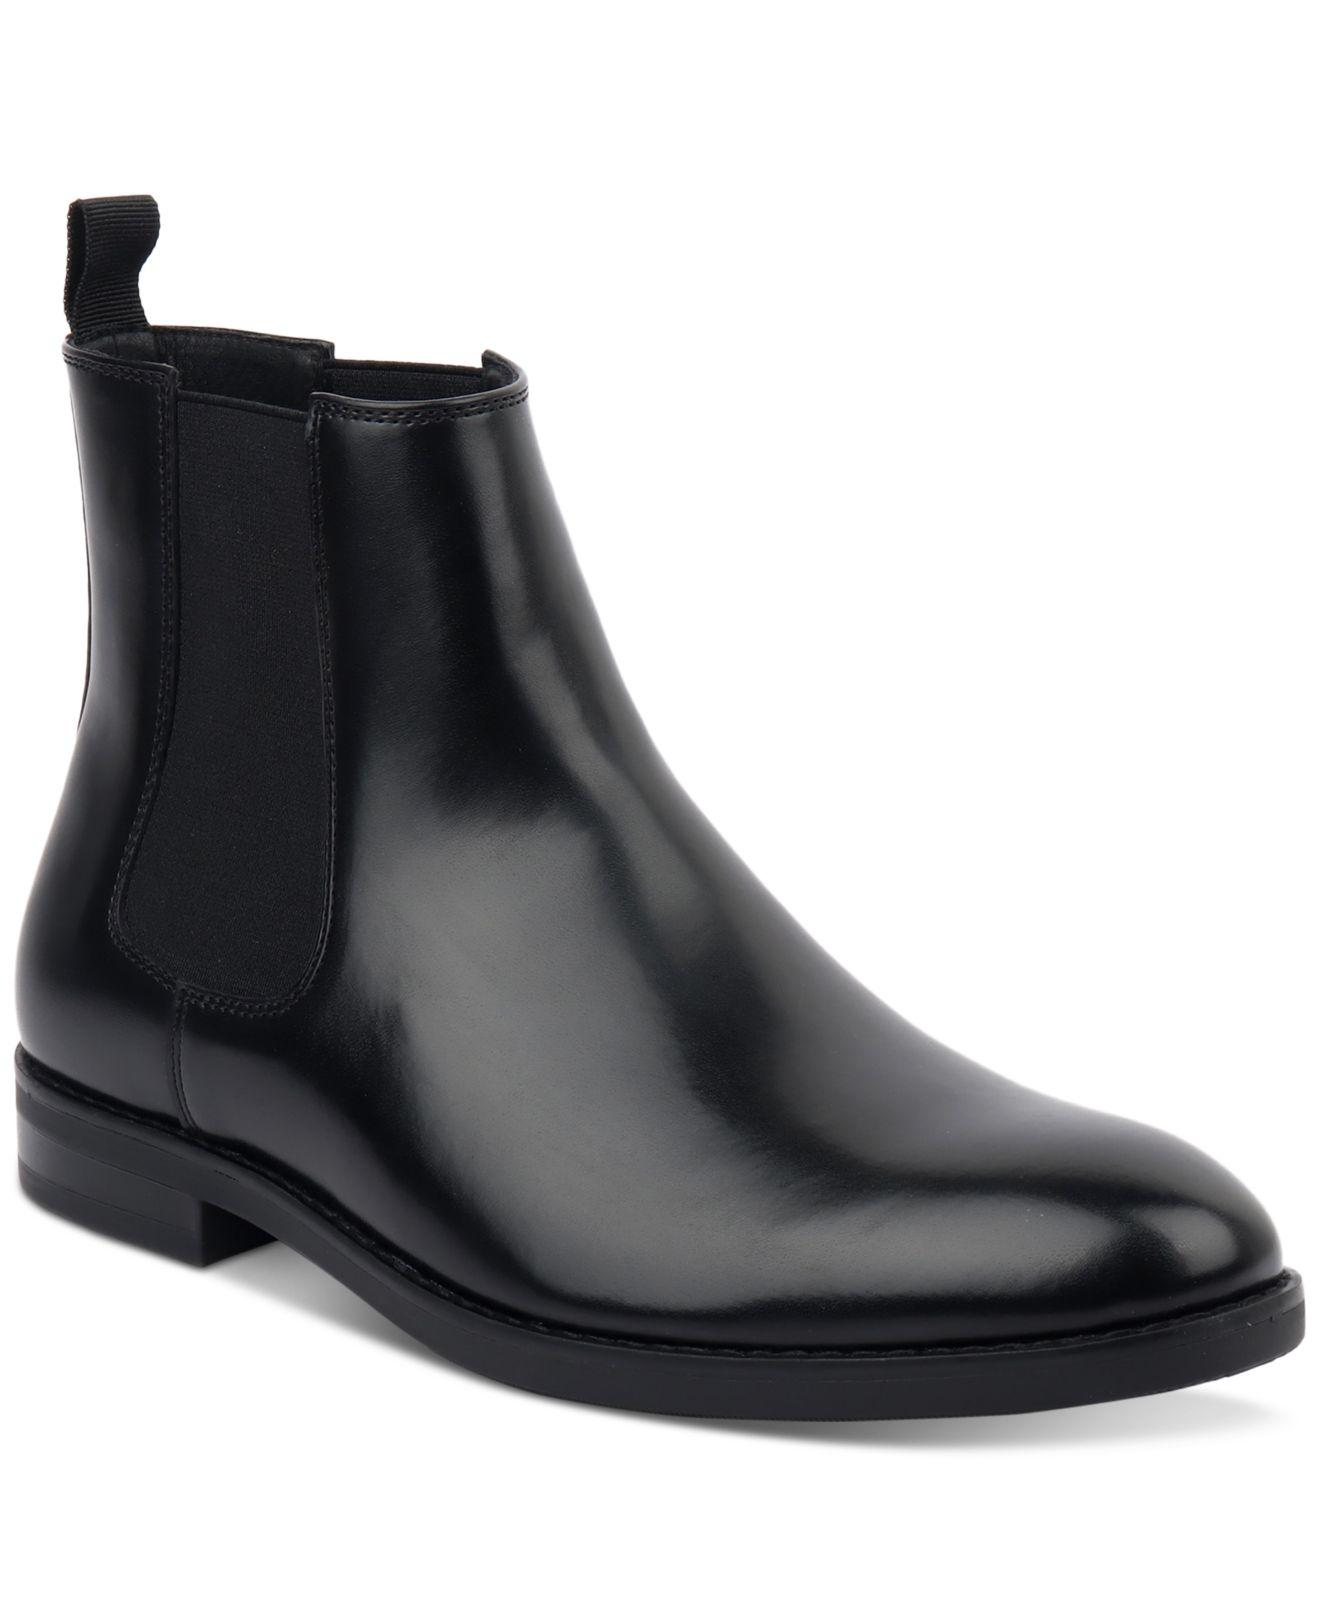 Chelsea Boots - Black/faux leather - Men